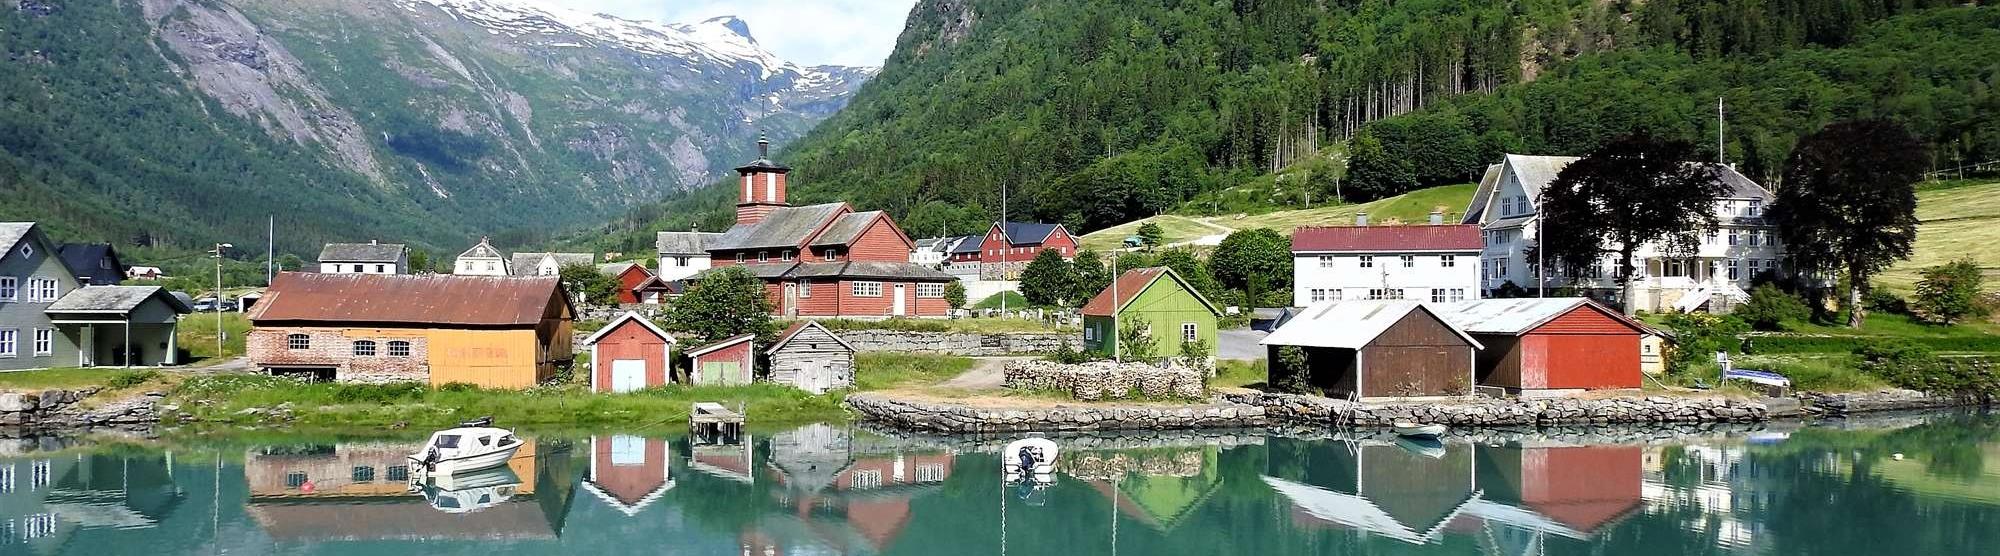 Fjærland village